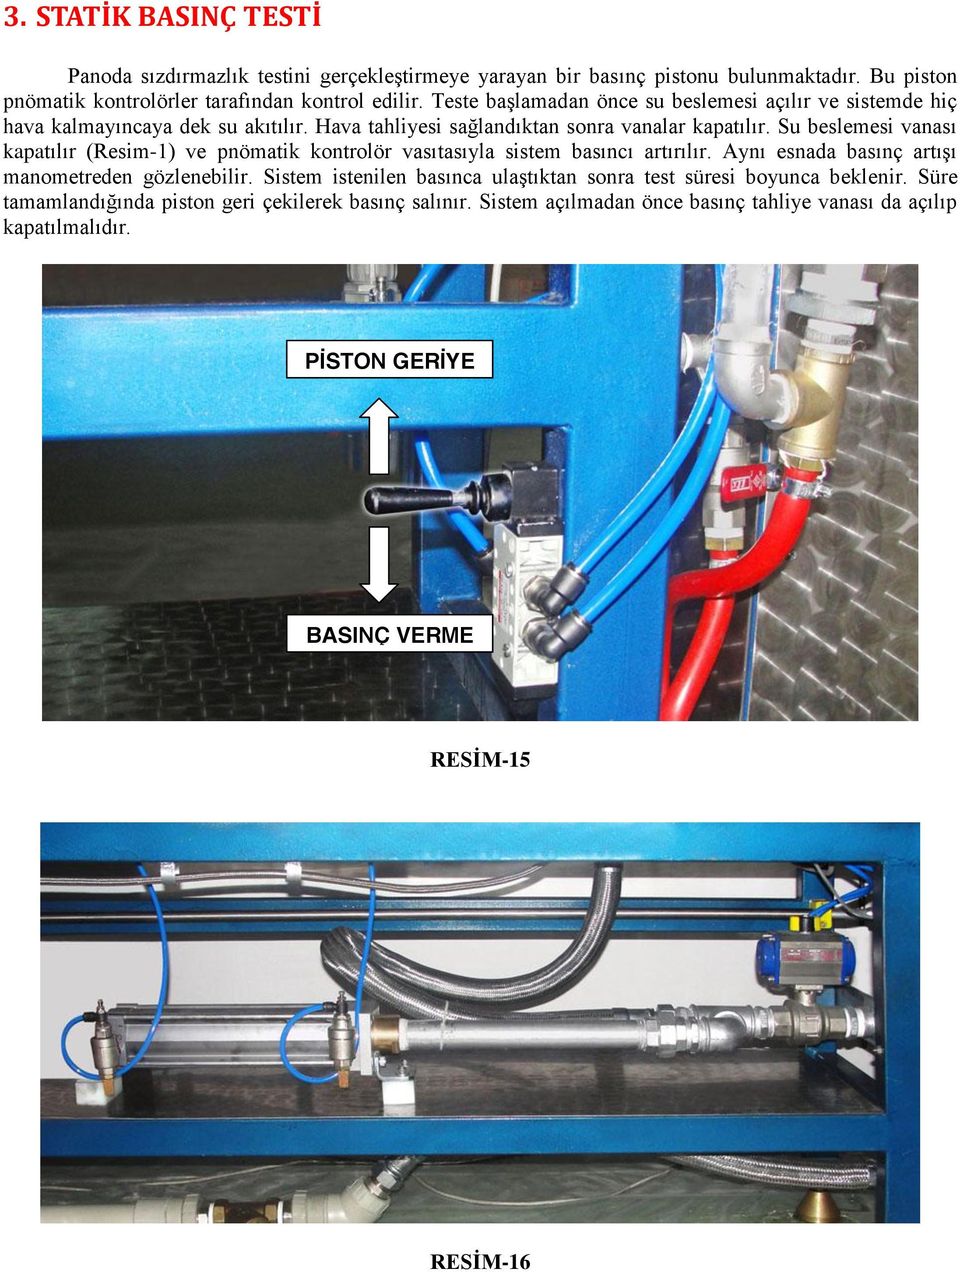 Su beslemesi vanası kapatılır (Resim-1) ve pnömatik kontrolör vasıtasıyla sistem basıncı artırılır. Aynı esnada basınç artışı manometreden gözlenebilir.